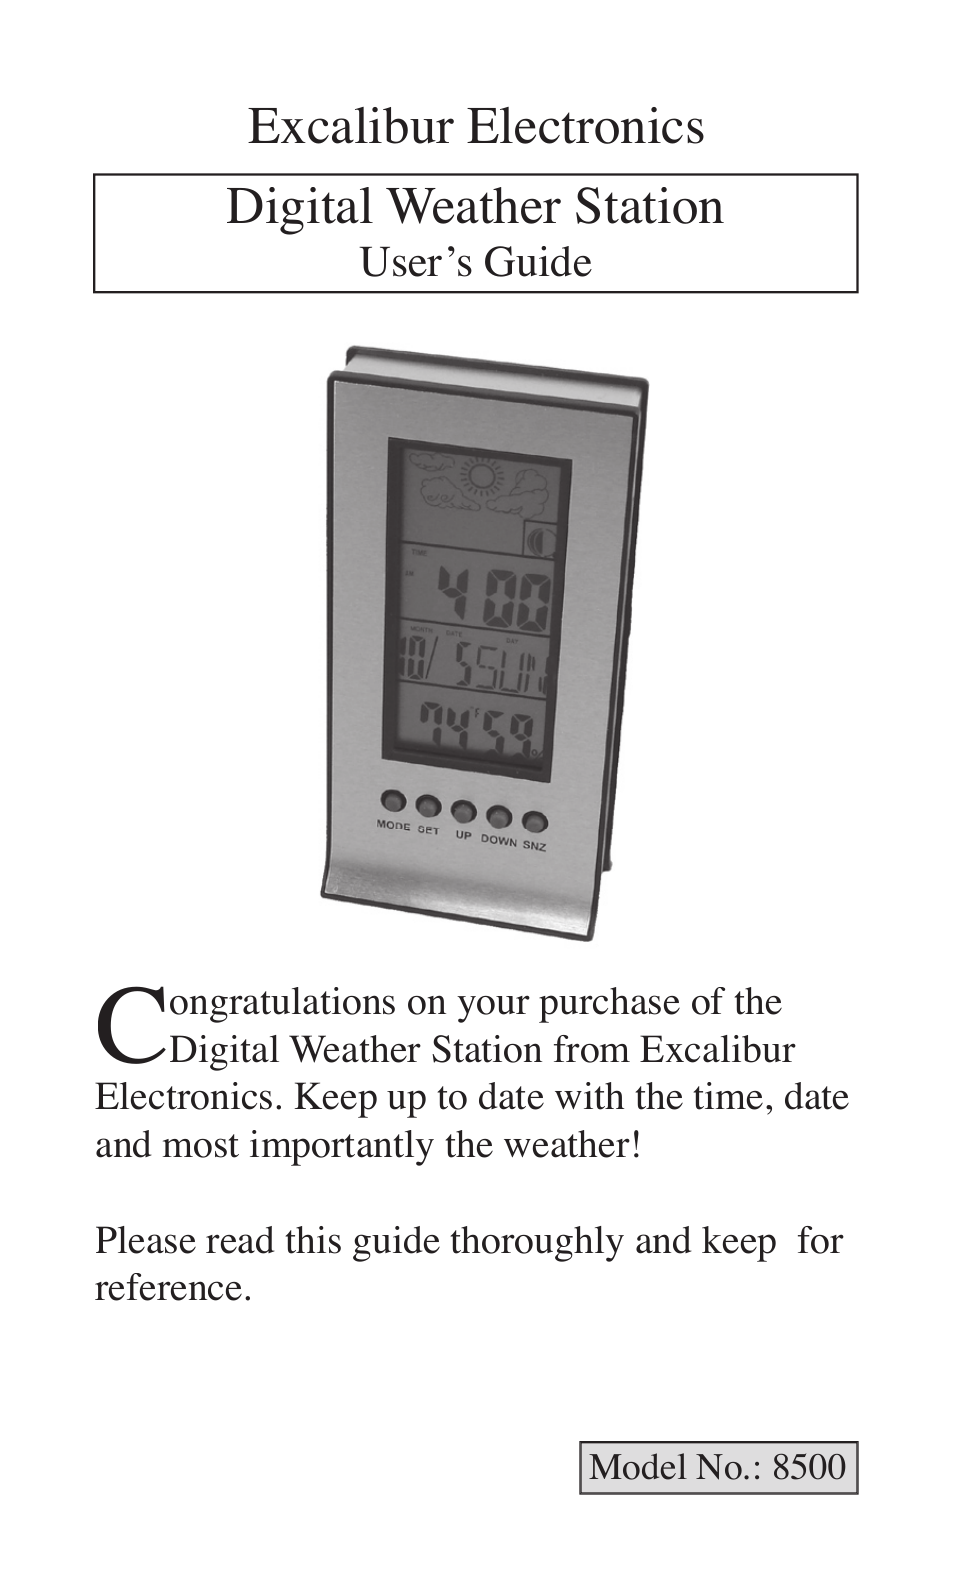 8500 Digital Weather Station